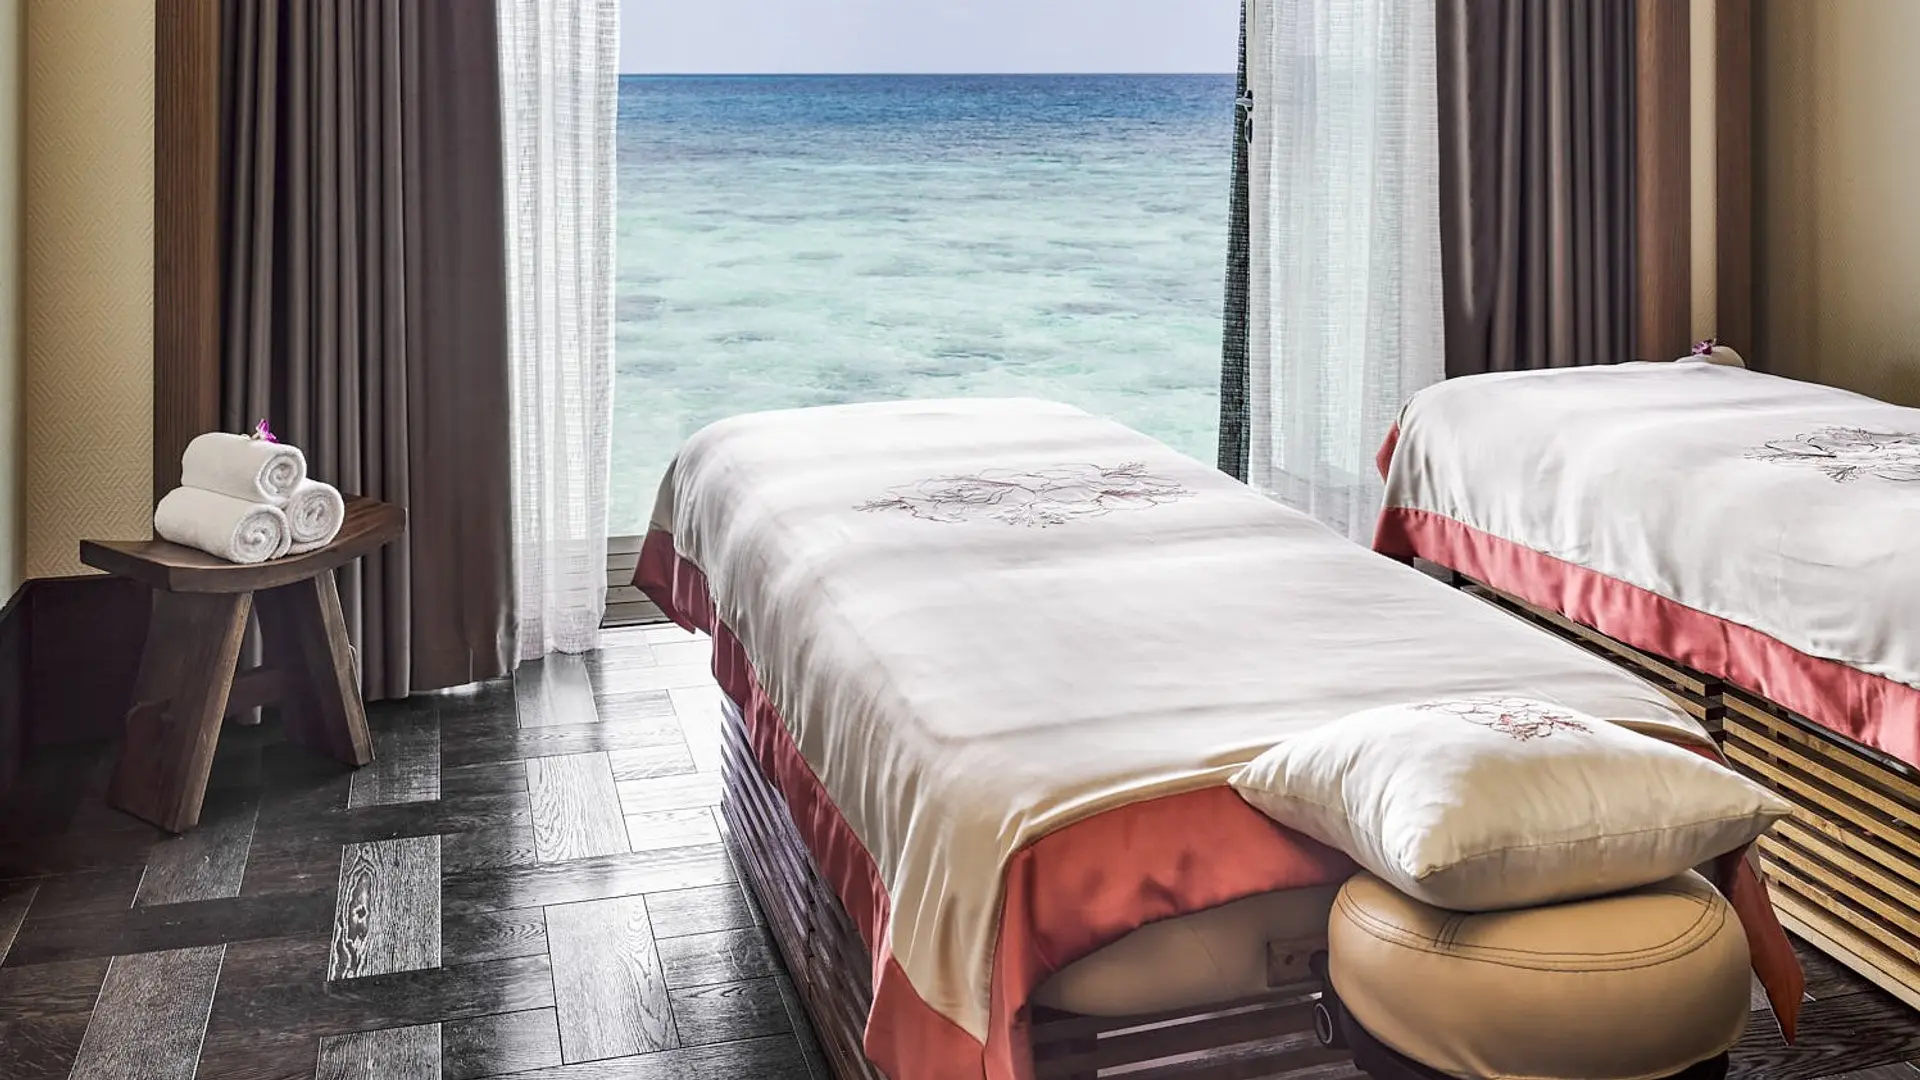 Hotel review Service & Facilities' - JOALI Maldives - 6